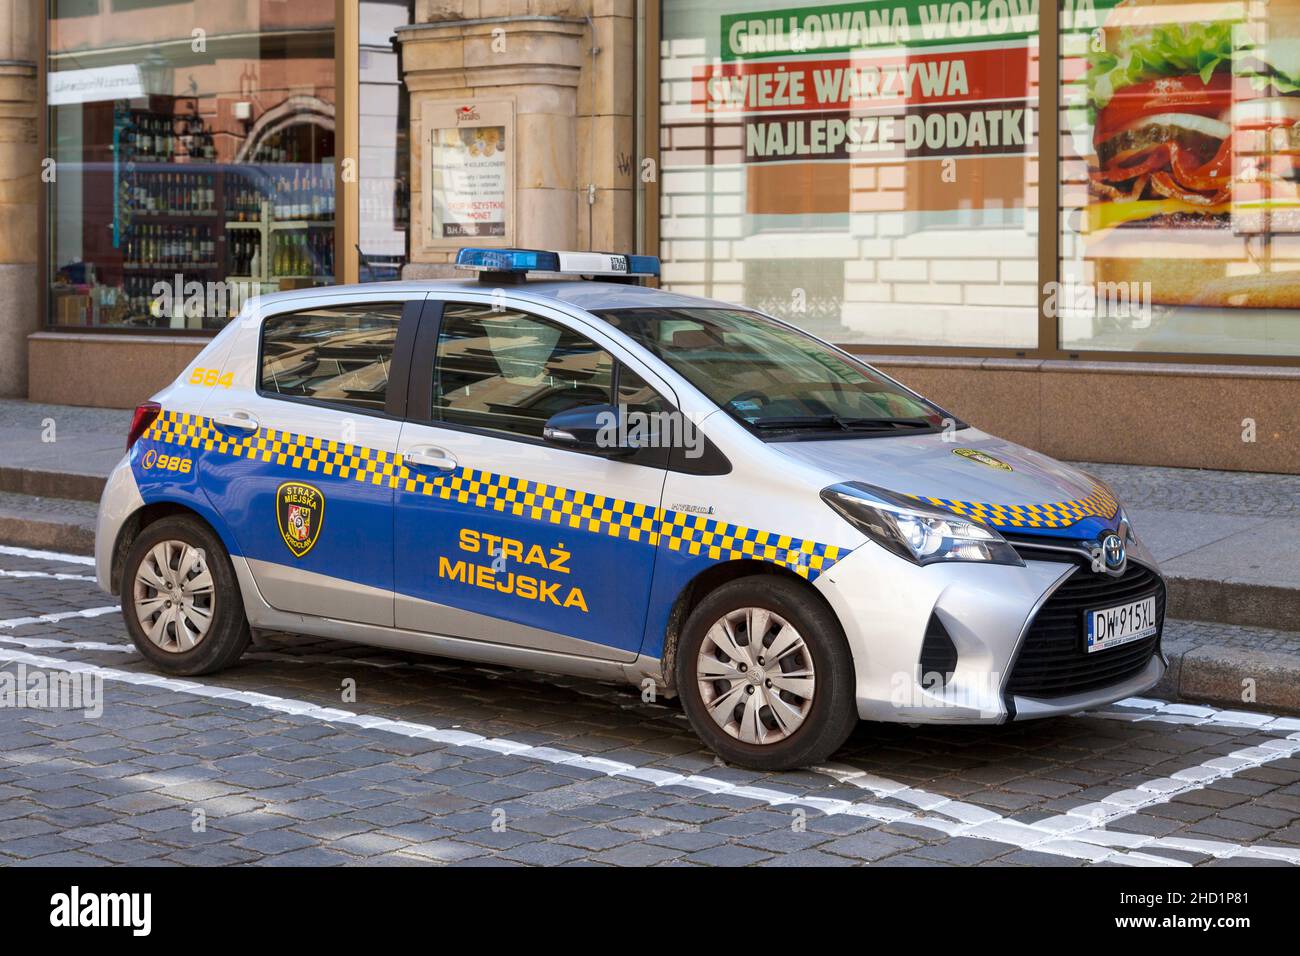 Wroclaw, Pologne - juin 05 2019 : voiture de police municipale (Straz Miejska) garée dans la vieille ville. Banque D'Images